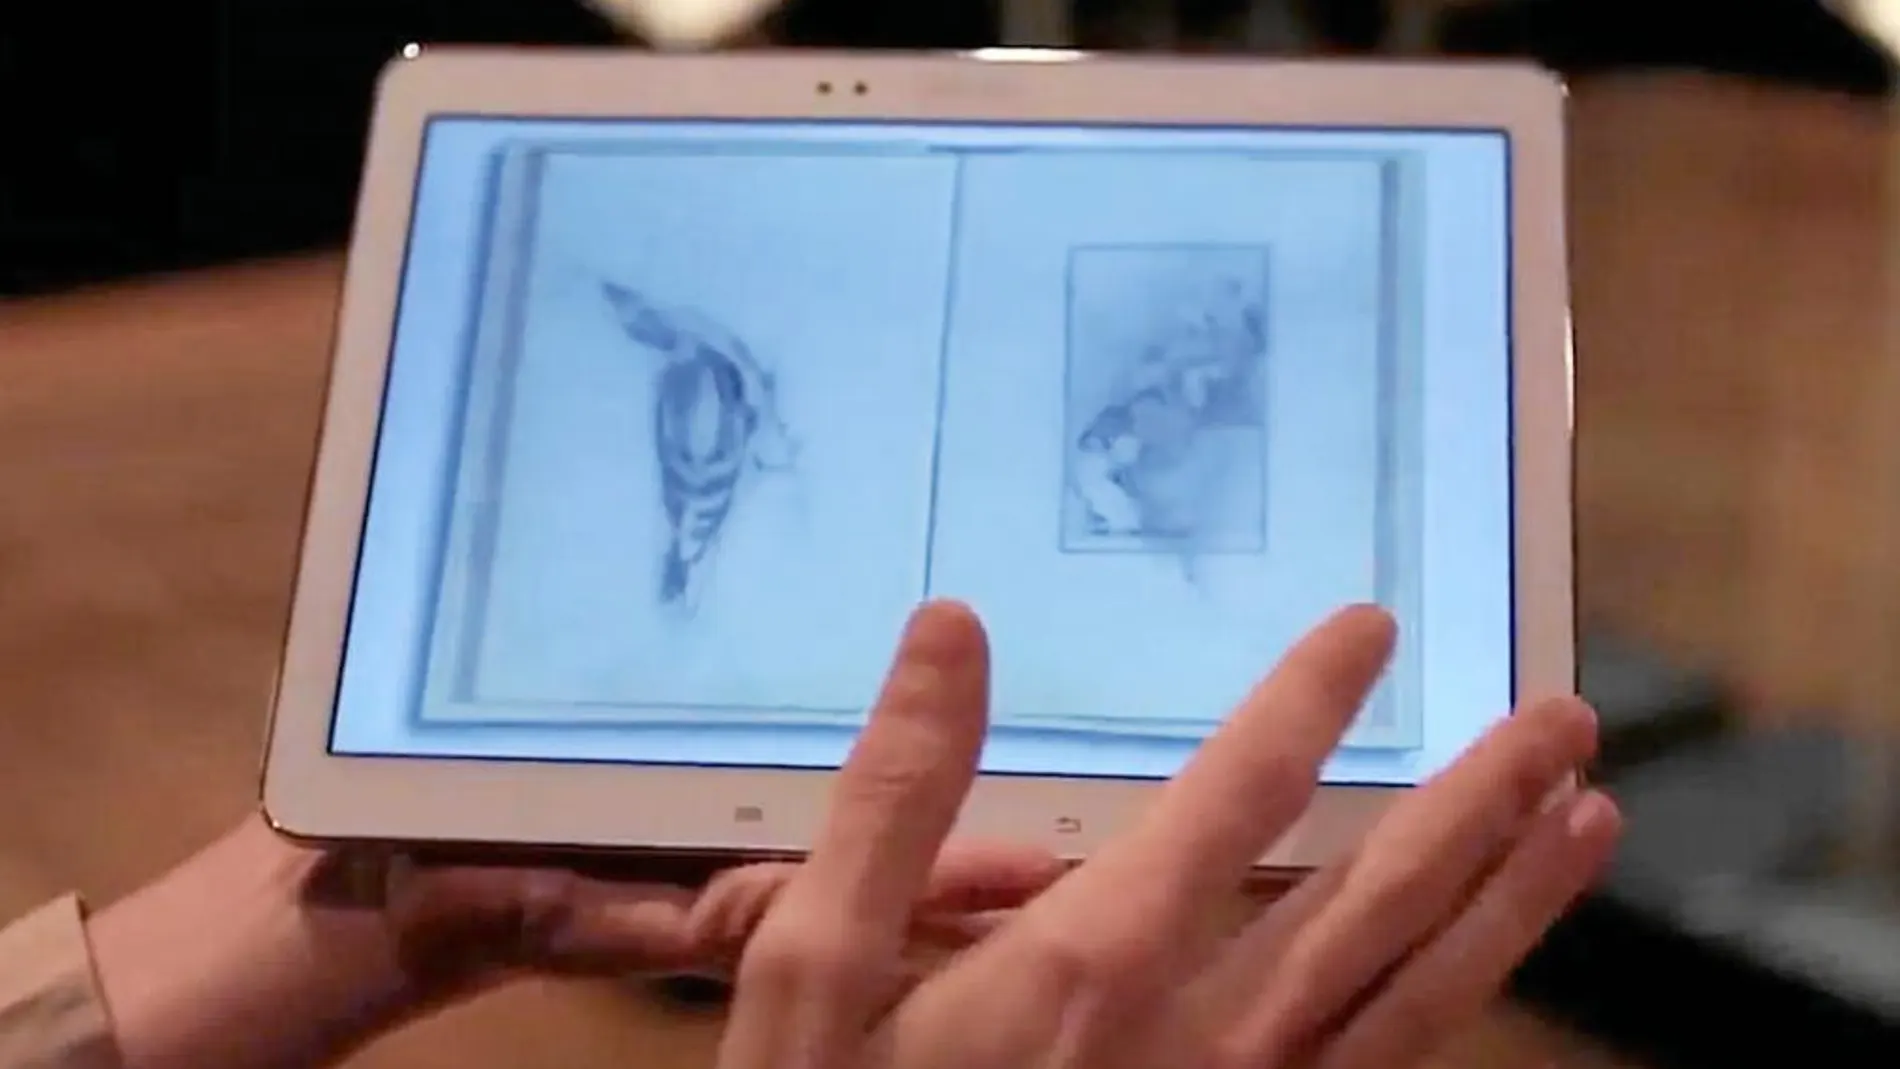 Con tableta es como puede verse el contenido de las libretas de los pintores gracias a un acuerdo de El Prado y Samsung